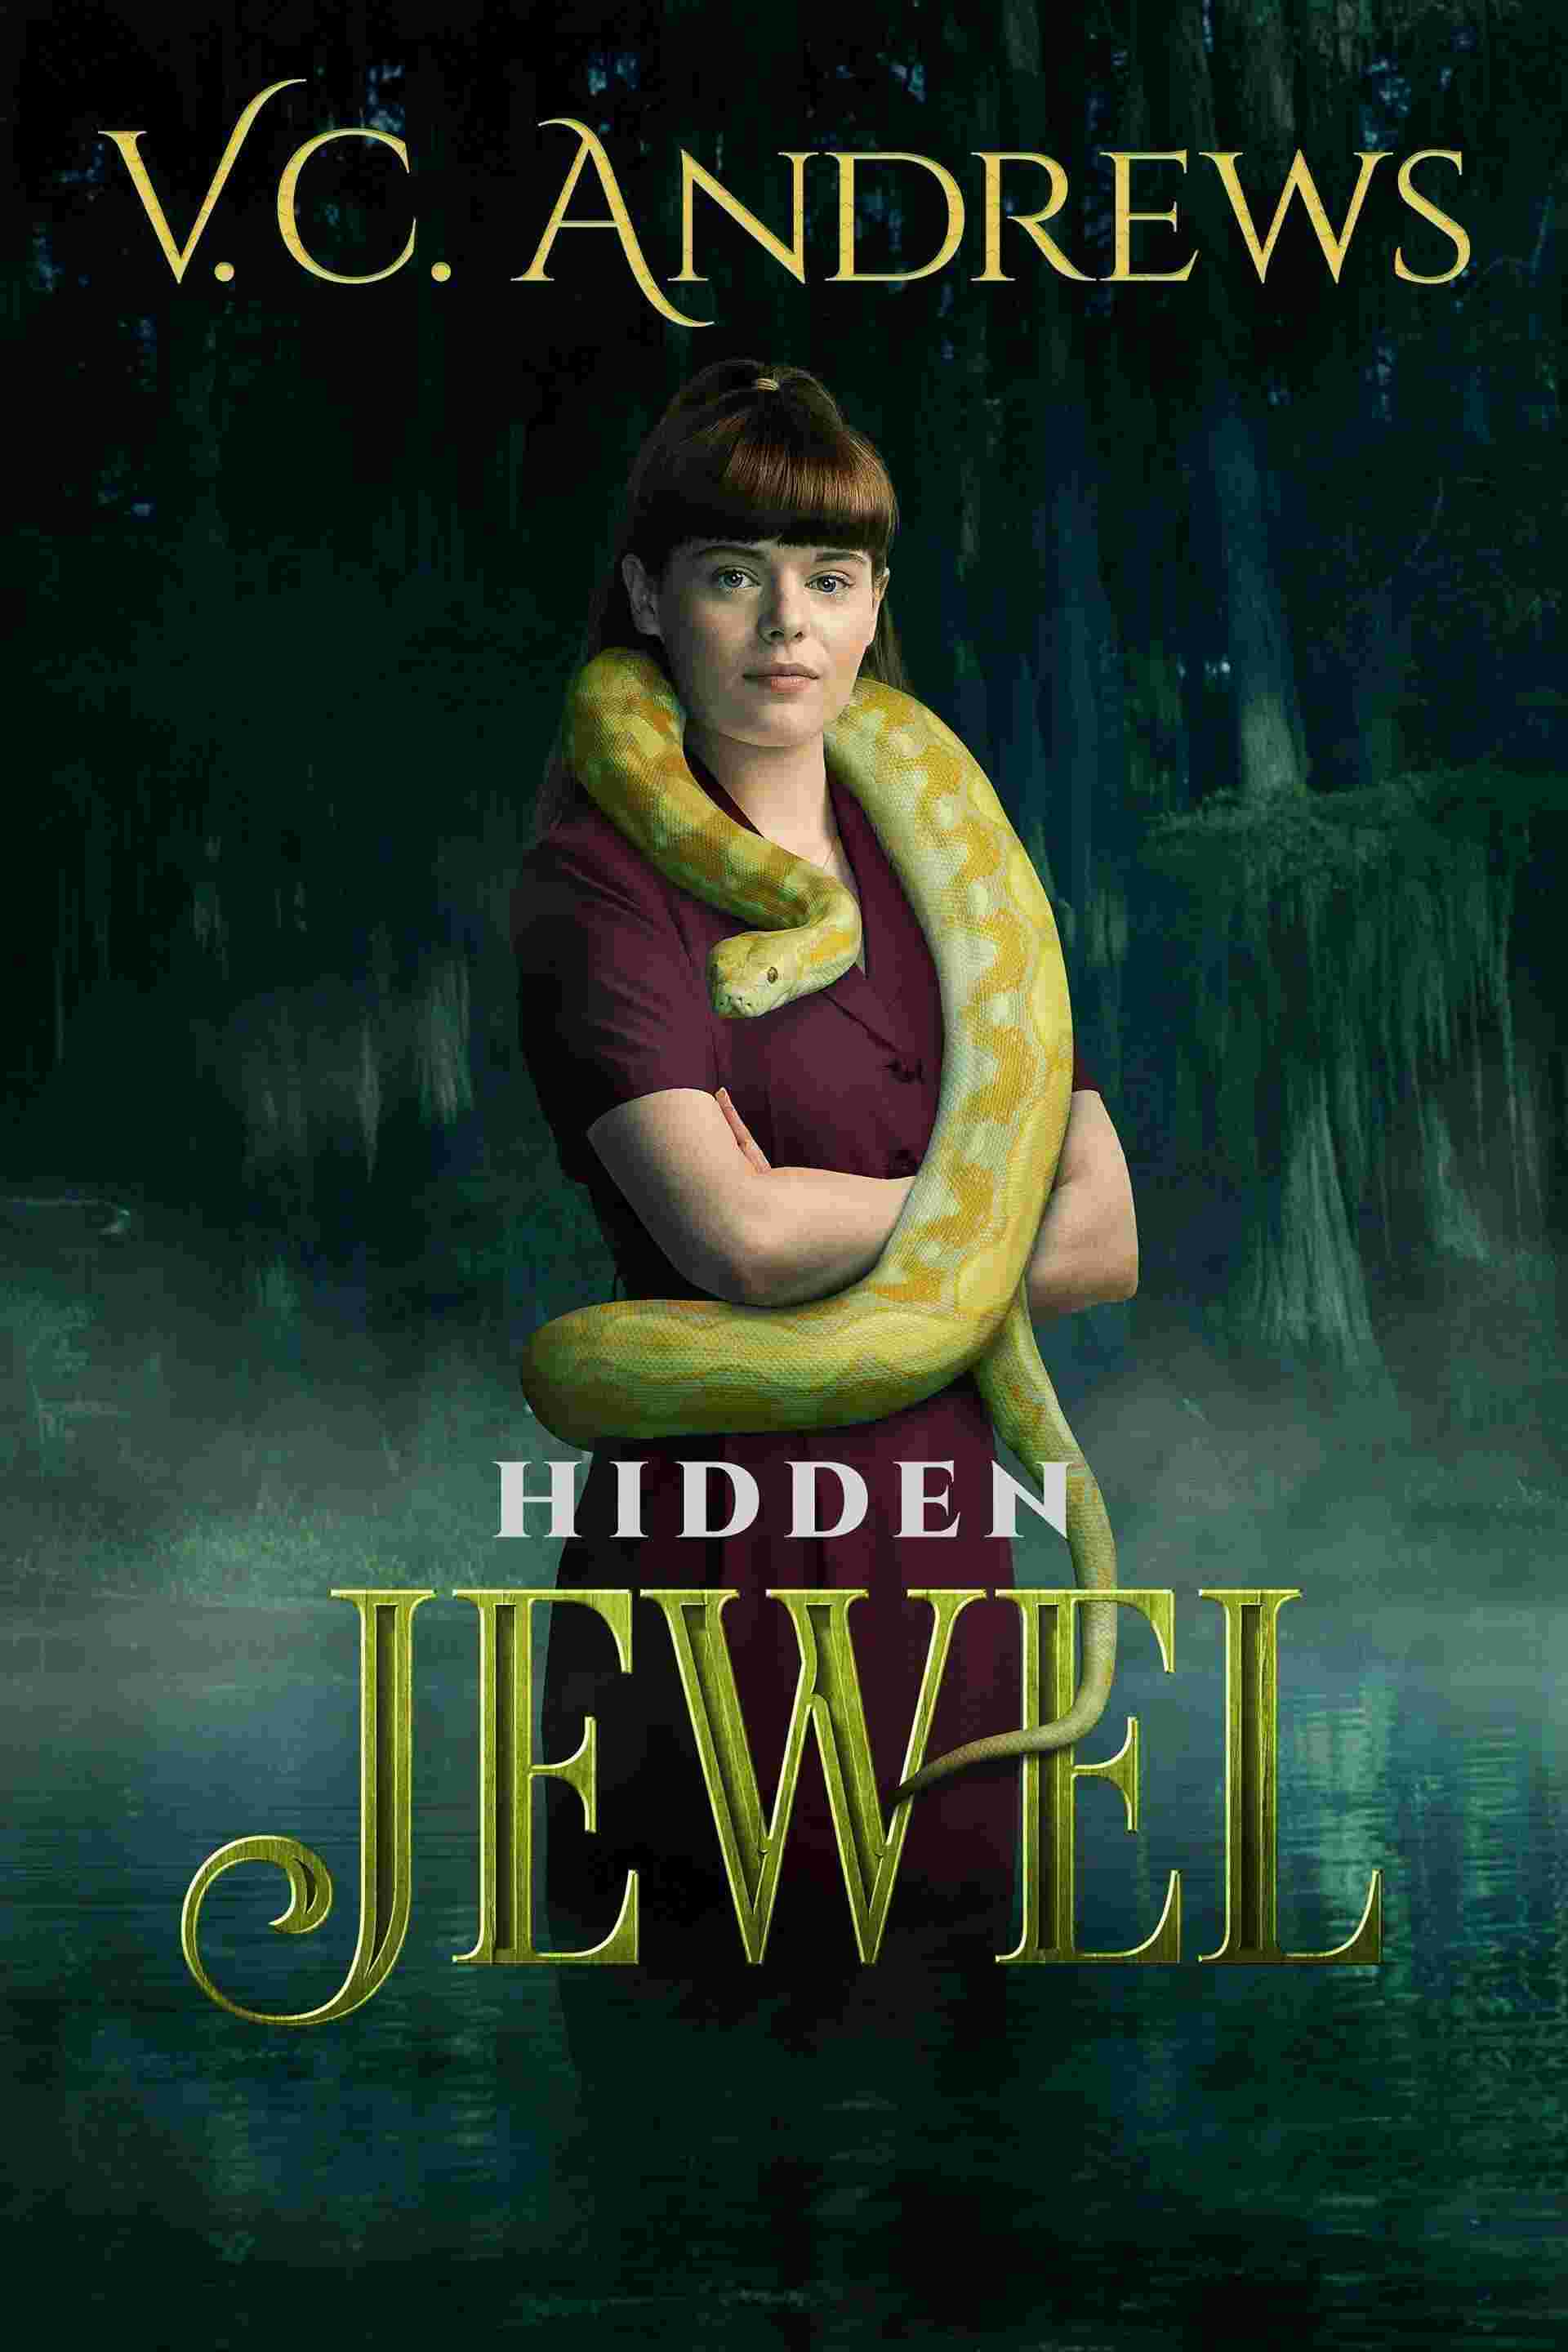 V.C. Andrews' Hidden Jewel (2021) Evan Roderick